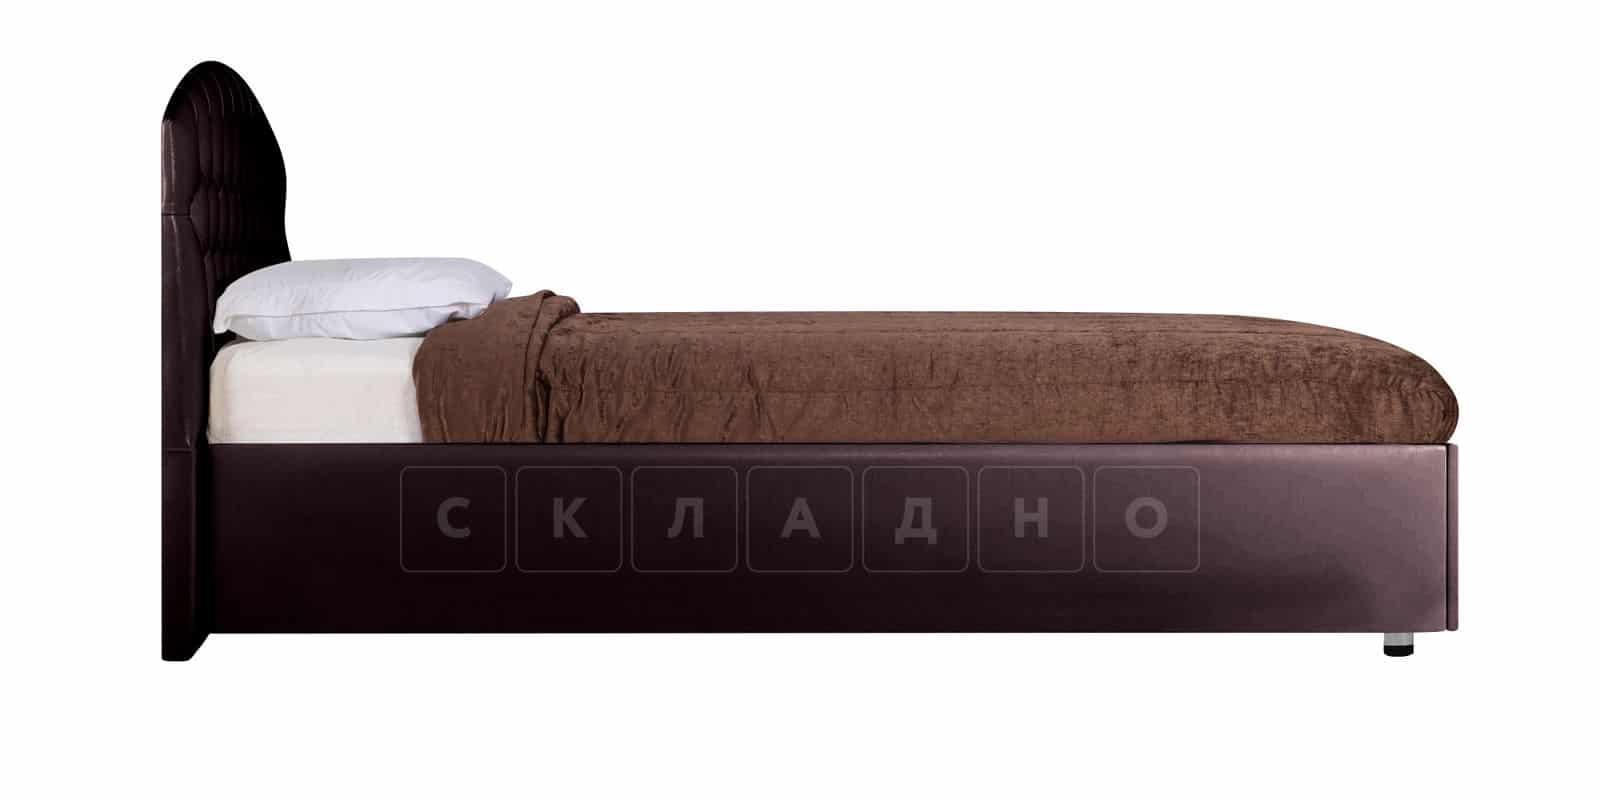 Мягкая кровать Малибу 160см экокожа шоколадного цвета вариант 1-2 фото 4 | интернет-магазин Складно